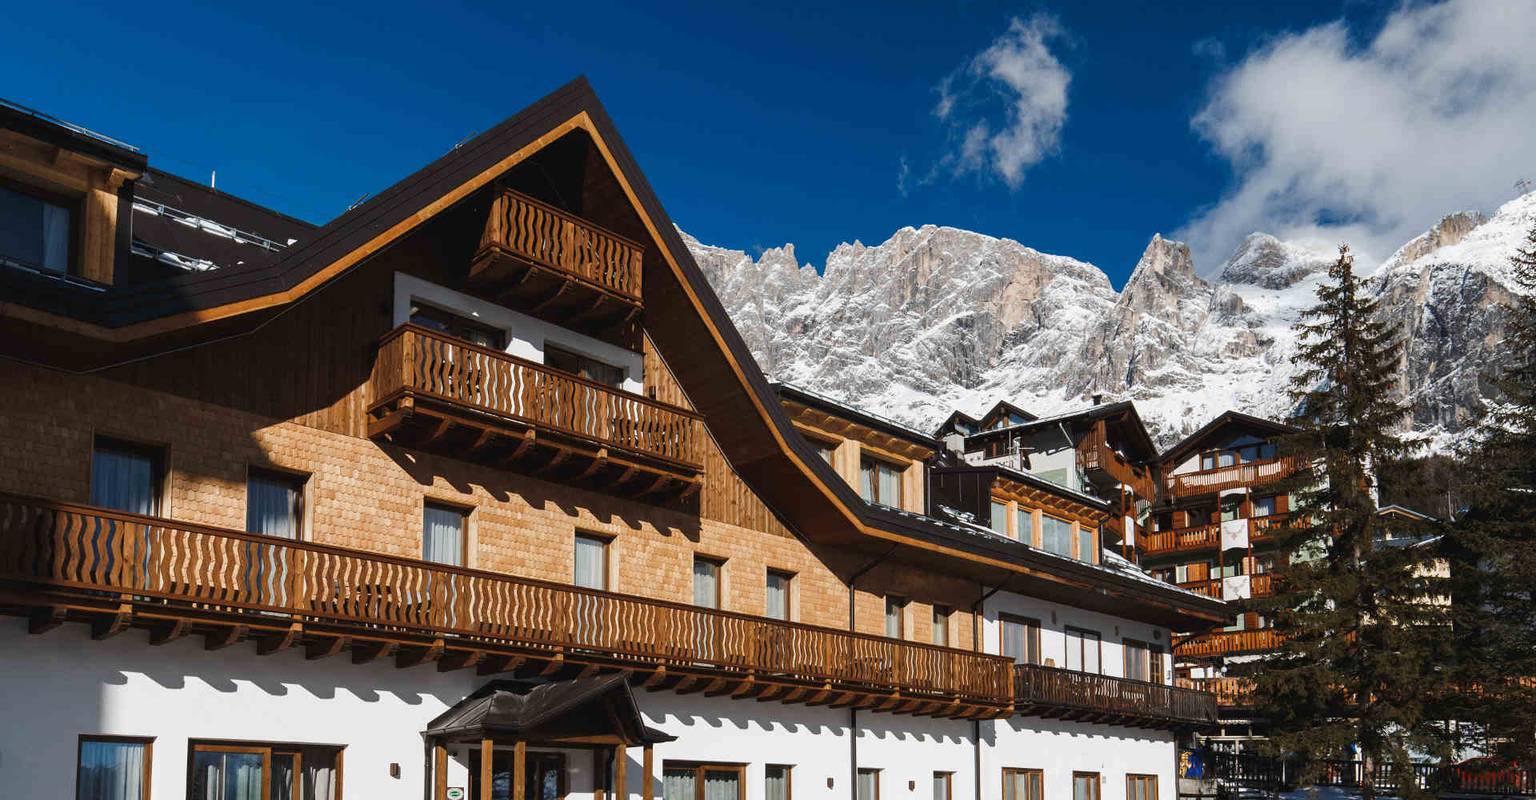 Dolomiten auf ihre weise leben Residence Hotel Langes San Martino di Castrozza